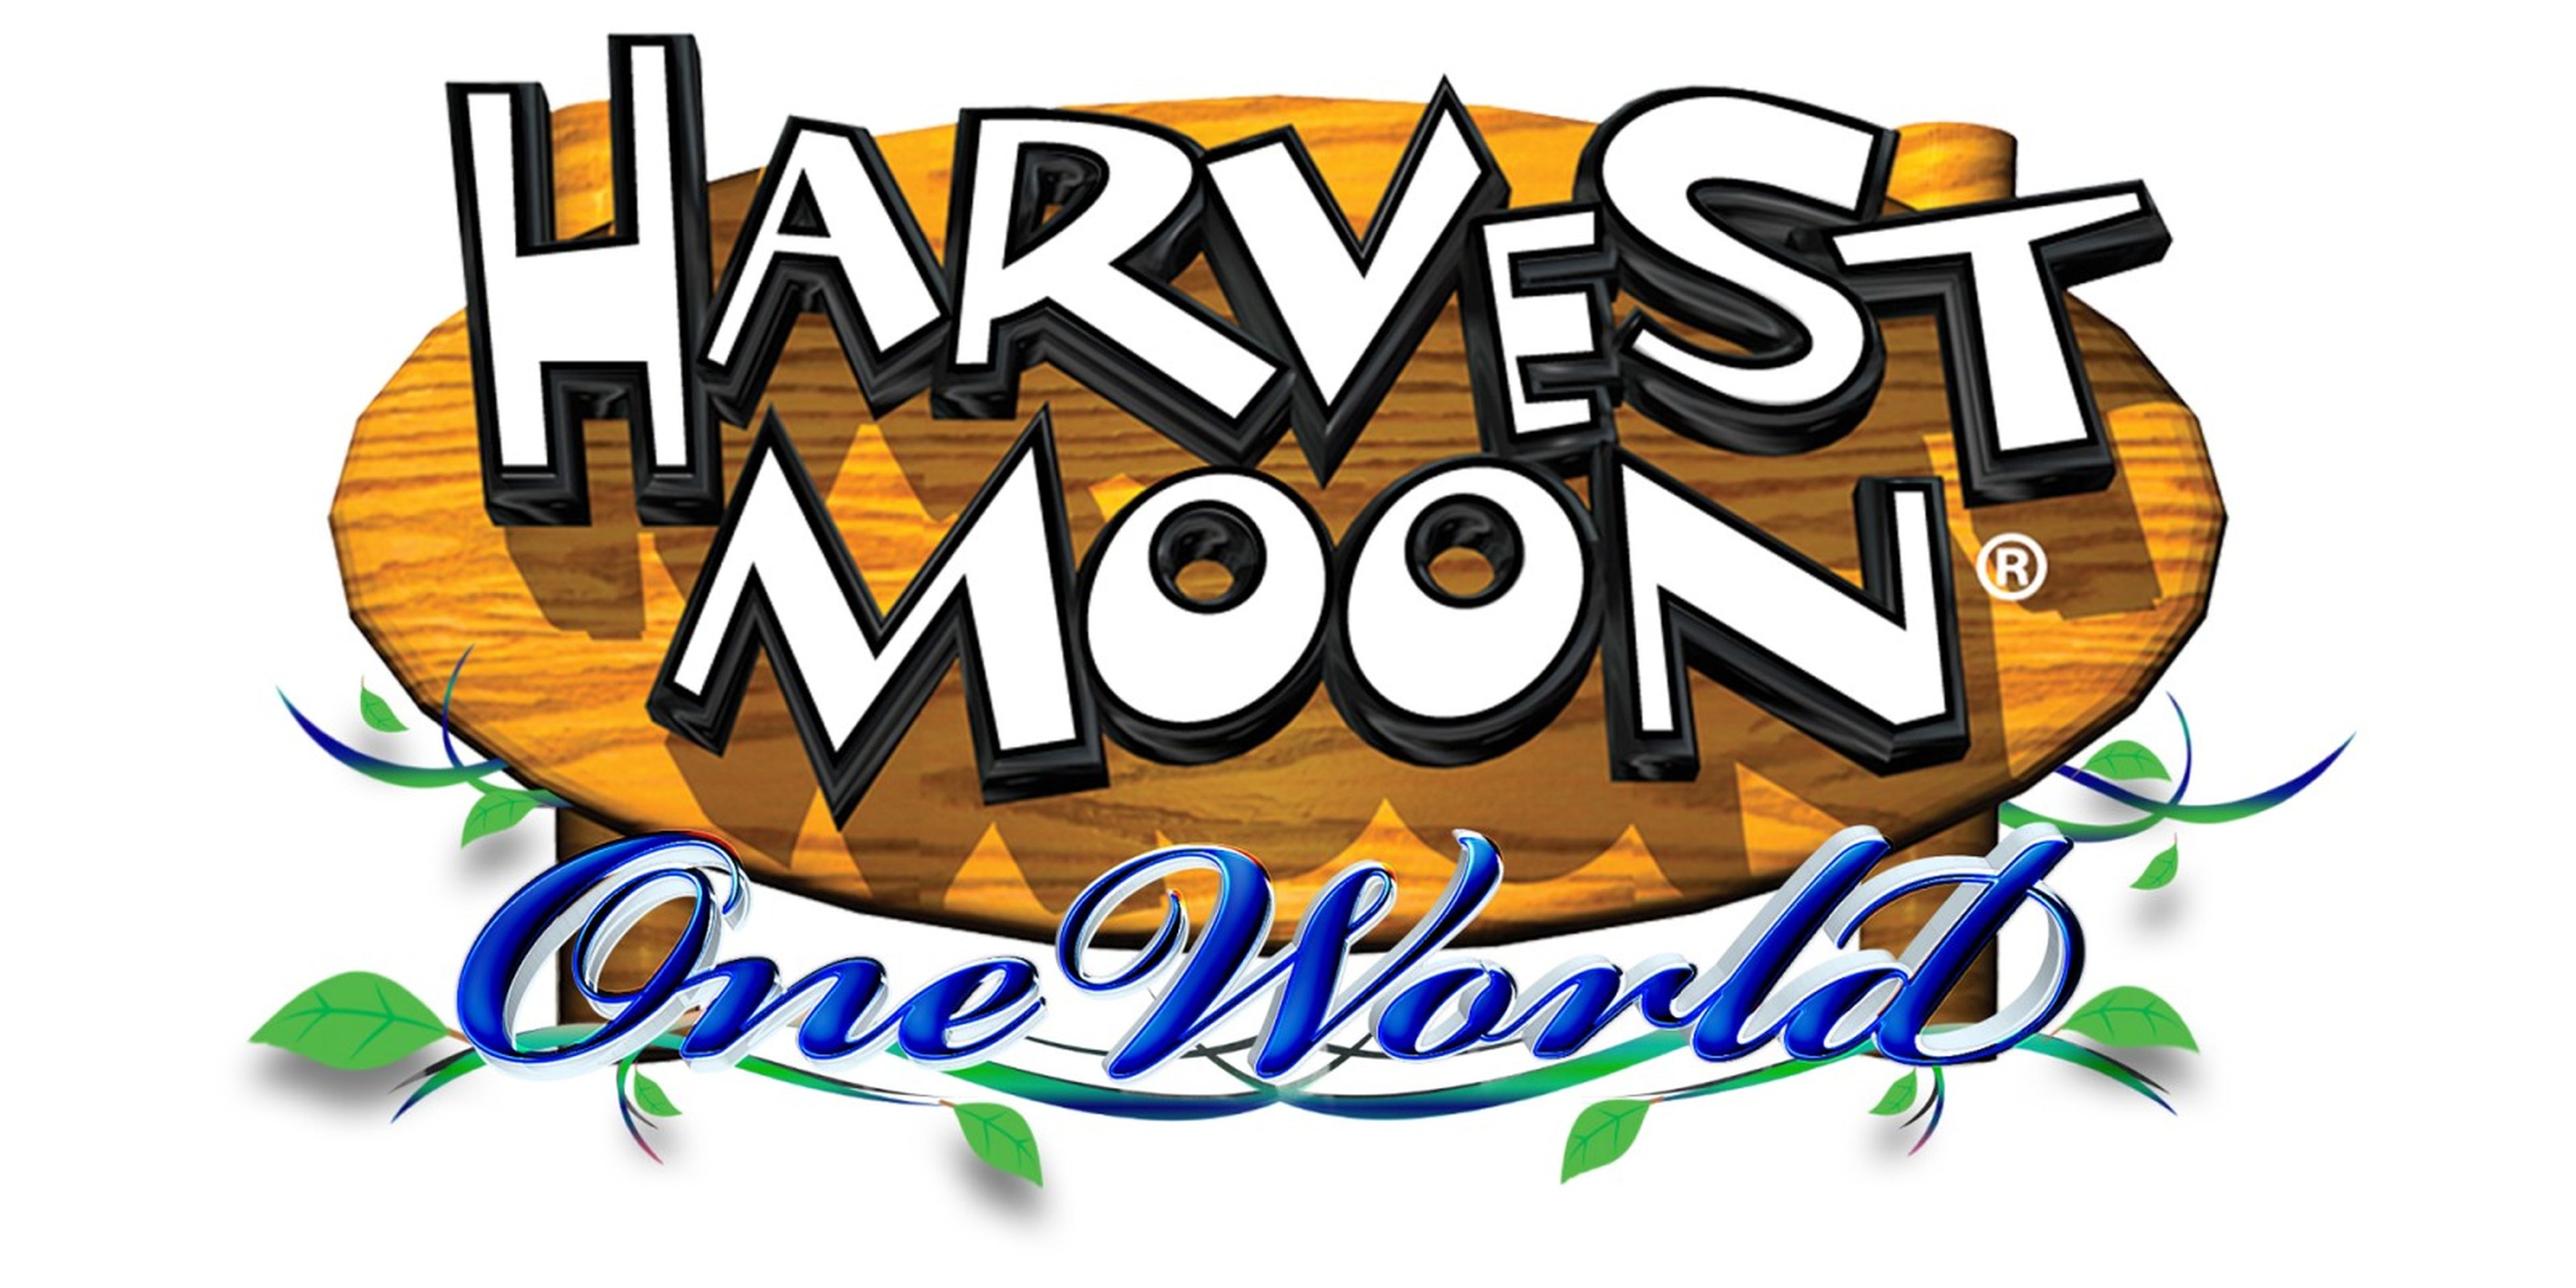 harvest moon